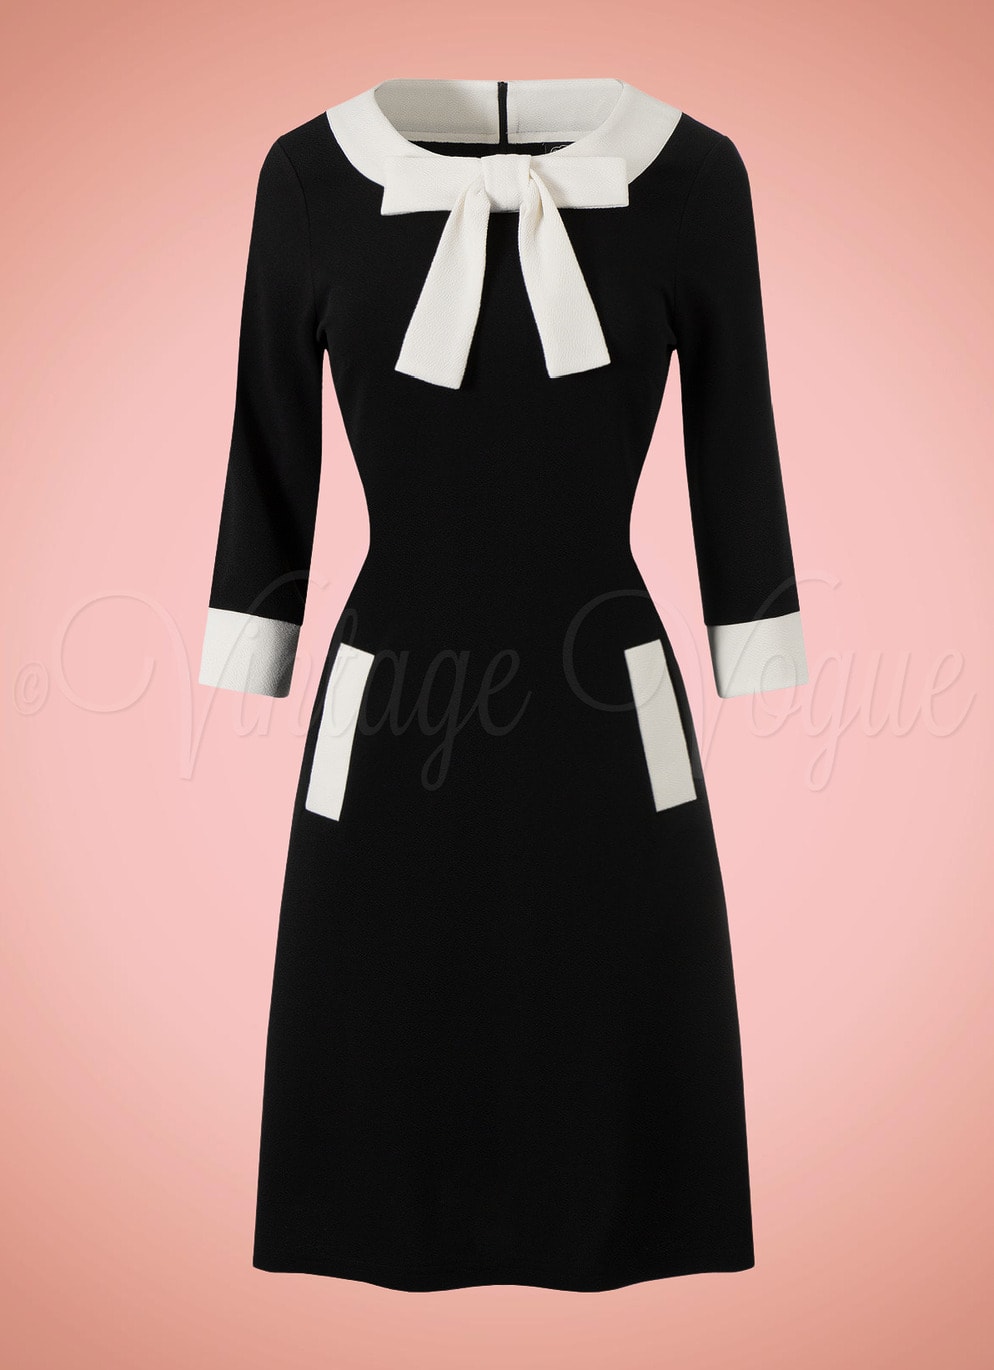 Voodoo Vixen 60er Jahre Retro A-Linie Kleid Contrast Dress in Schwarz Weiß 60's 1960er Damenkleid Mod Twiggy Kleid DRA9503